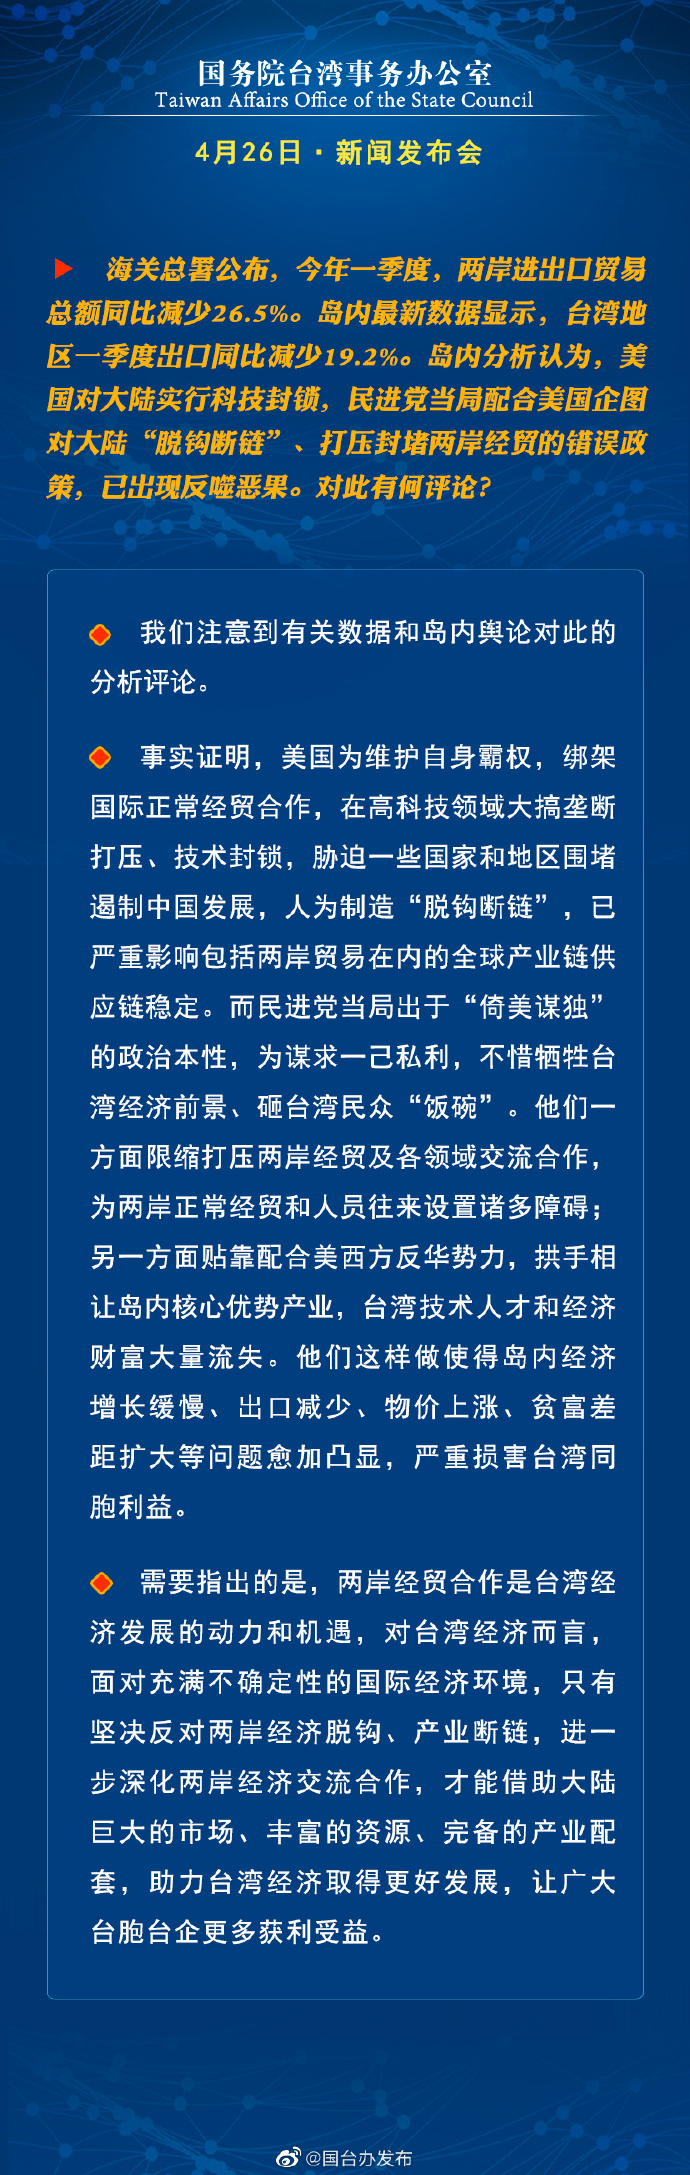 國務院台灣事務辦公室4月26日·新聞發佈會